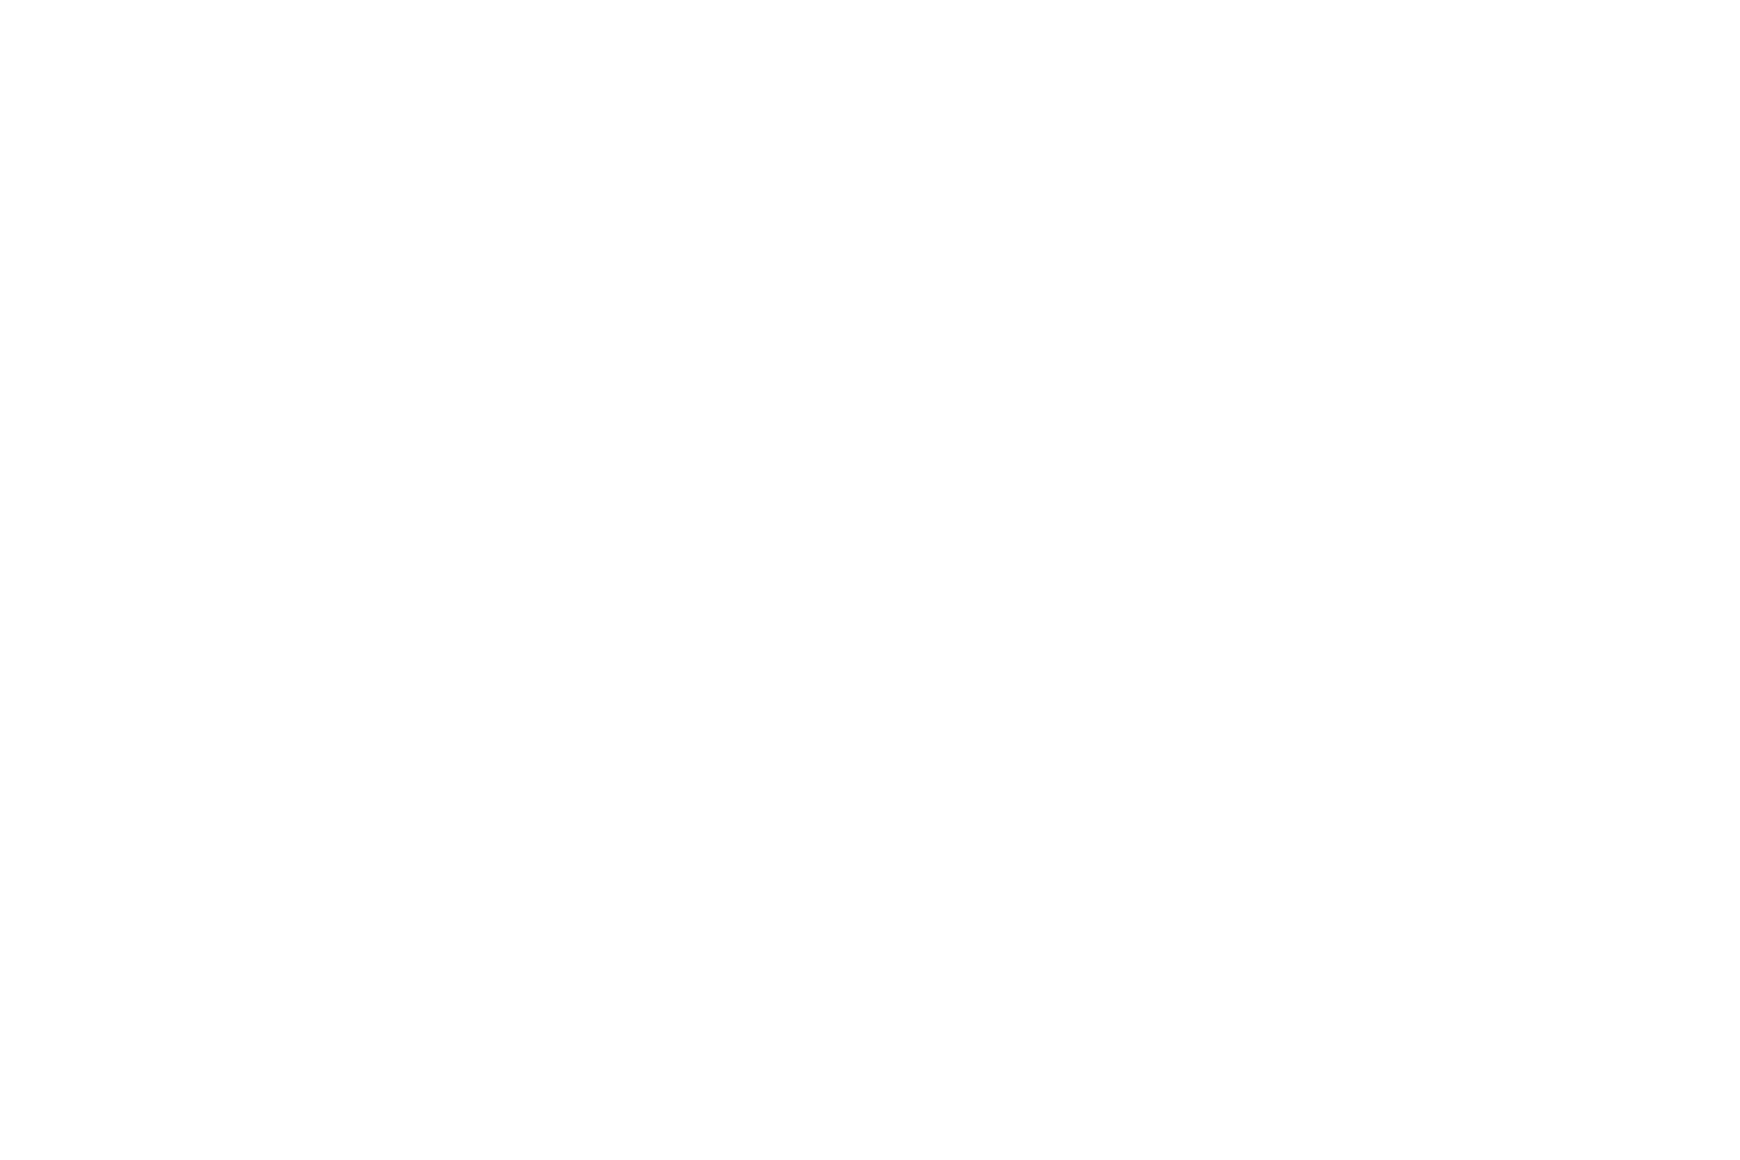 Iowa University Customer